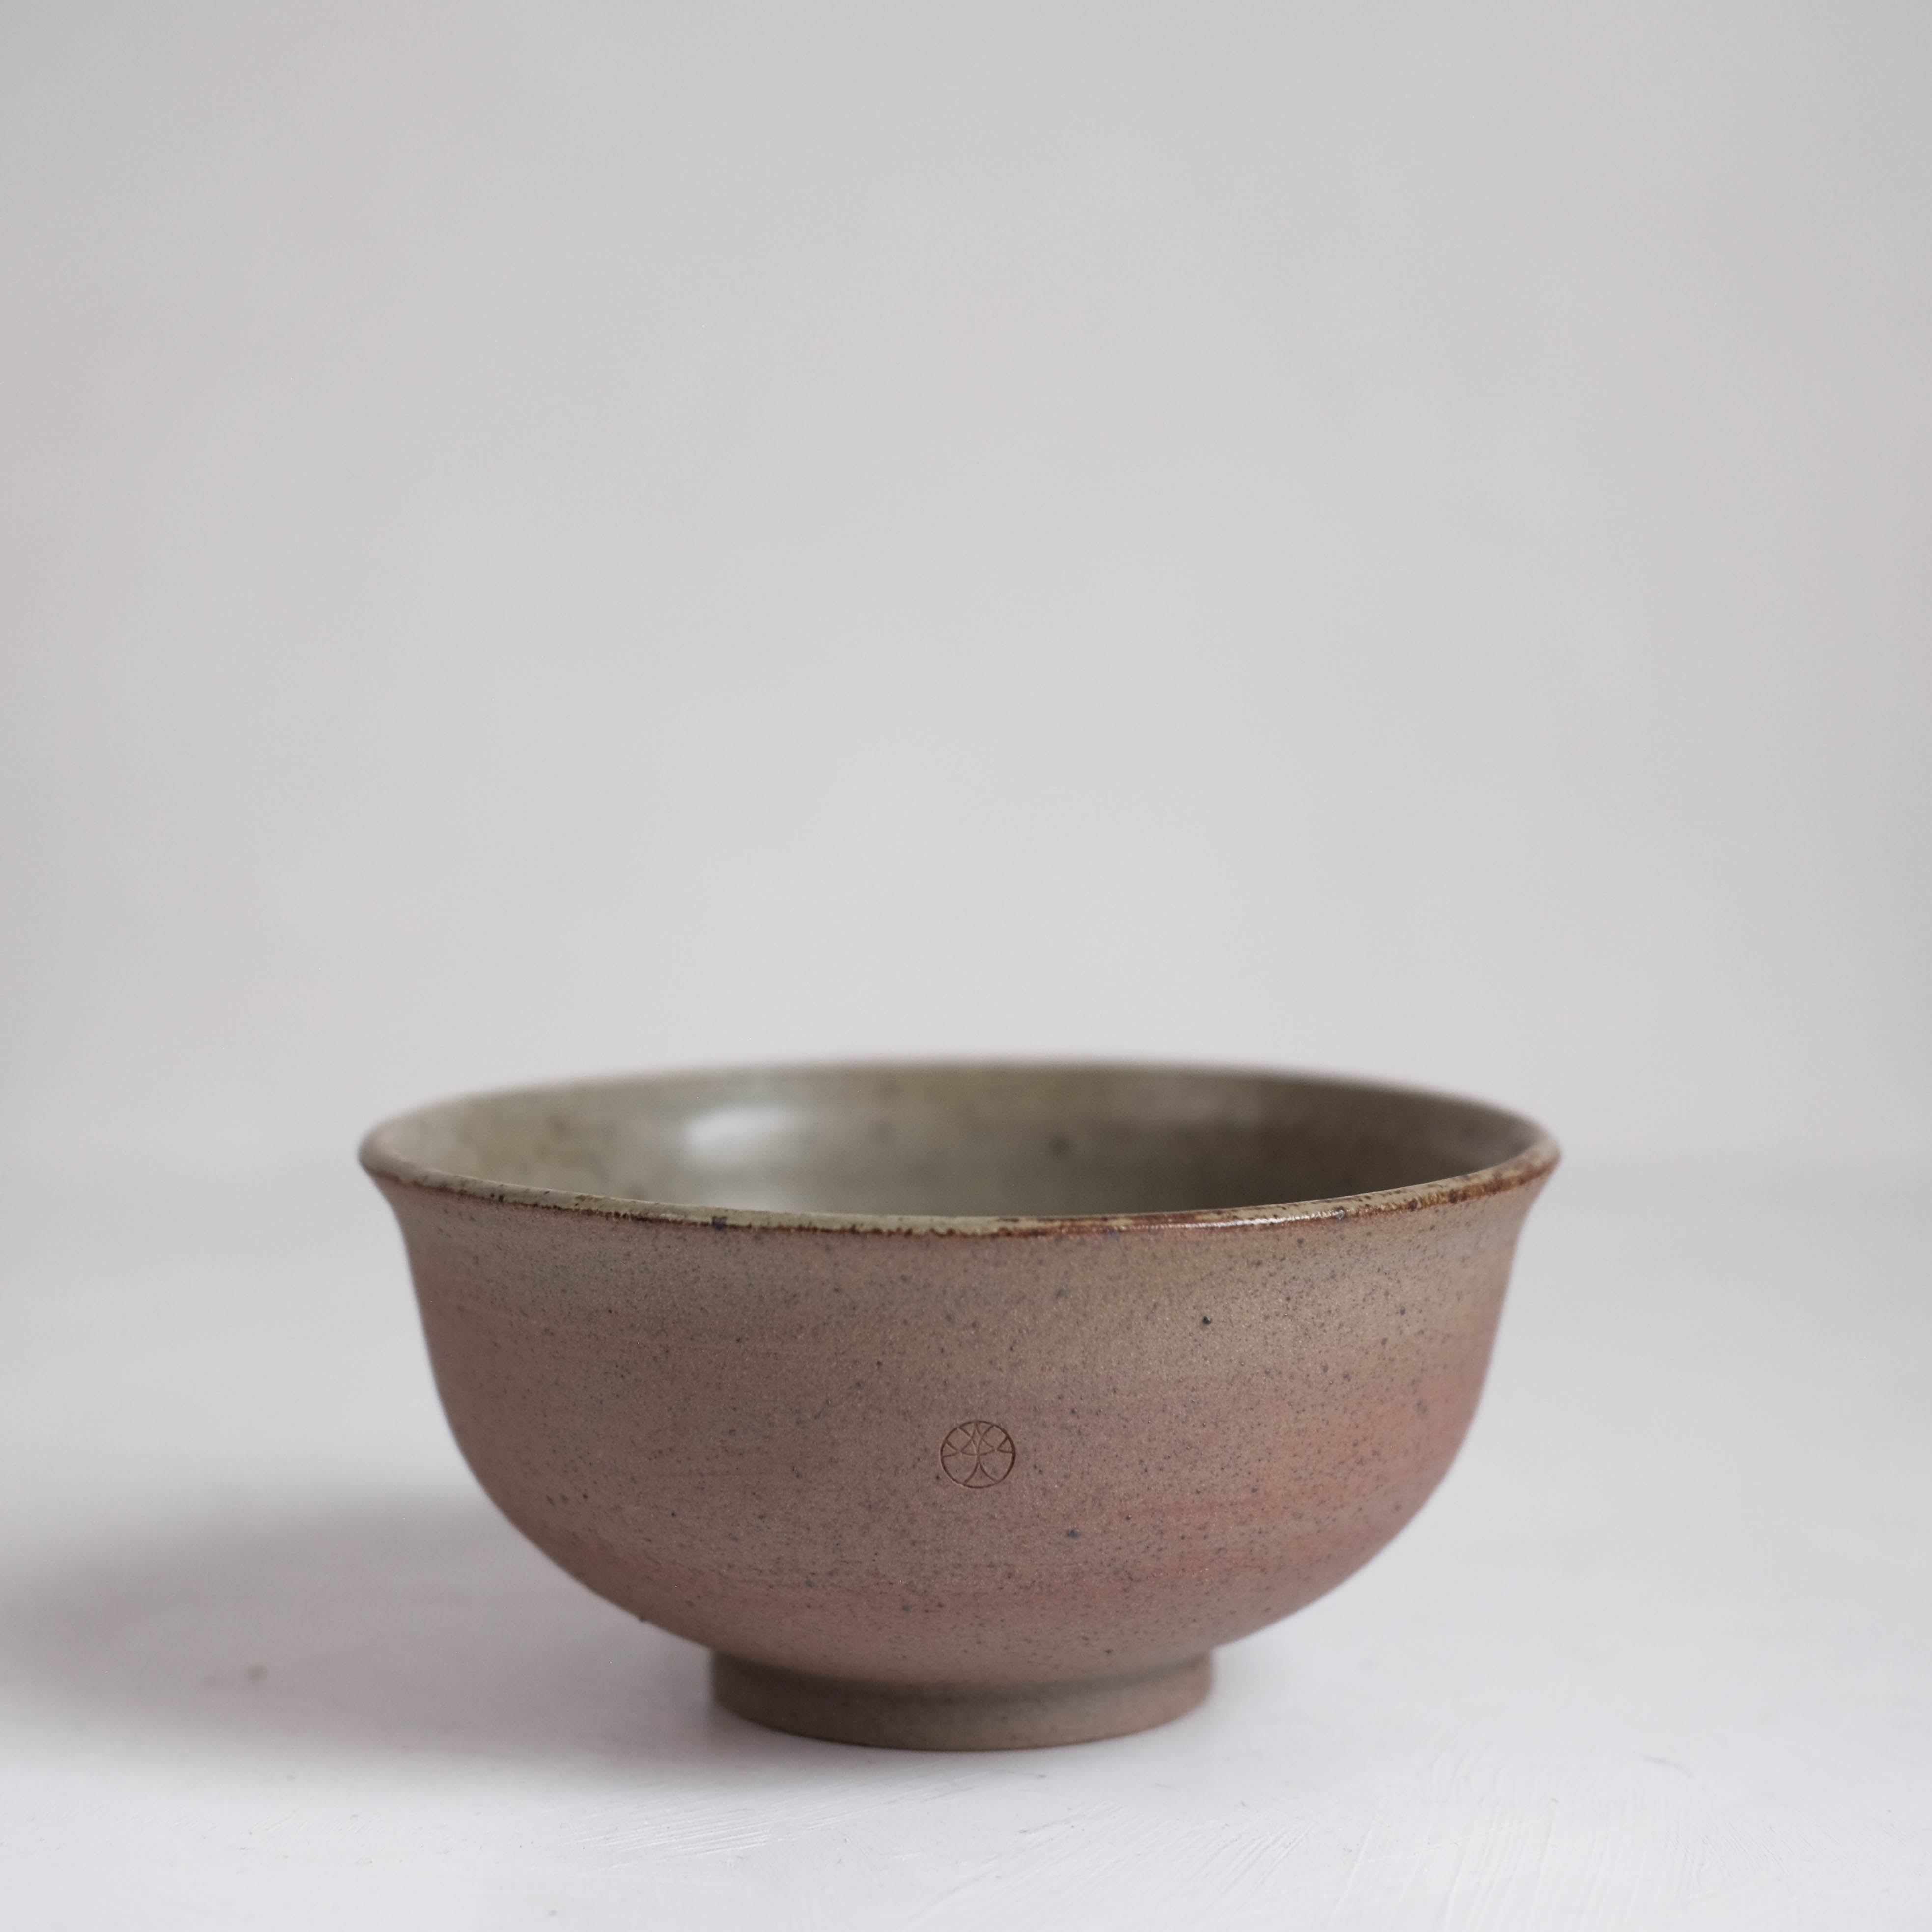 Haigusuri (灰釉) Bowl #ADN109